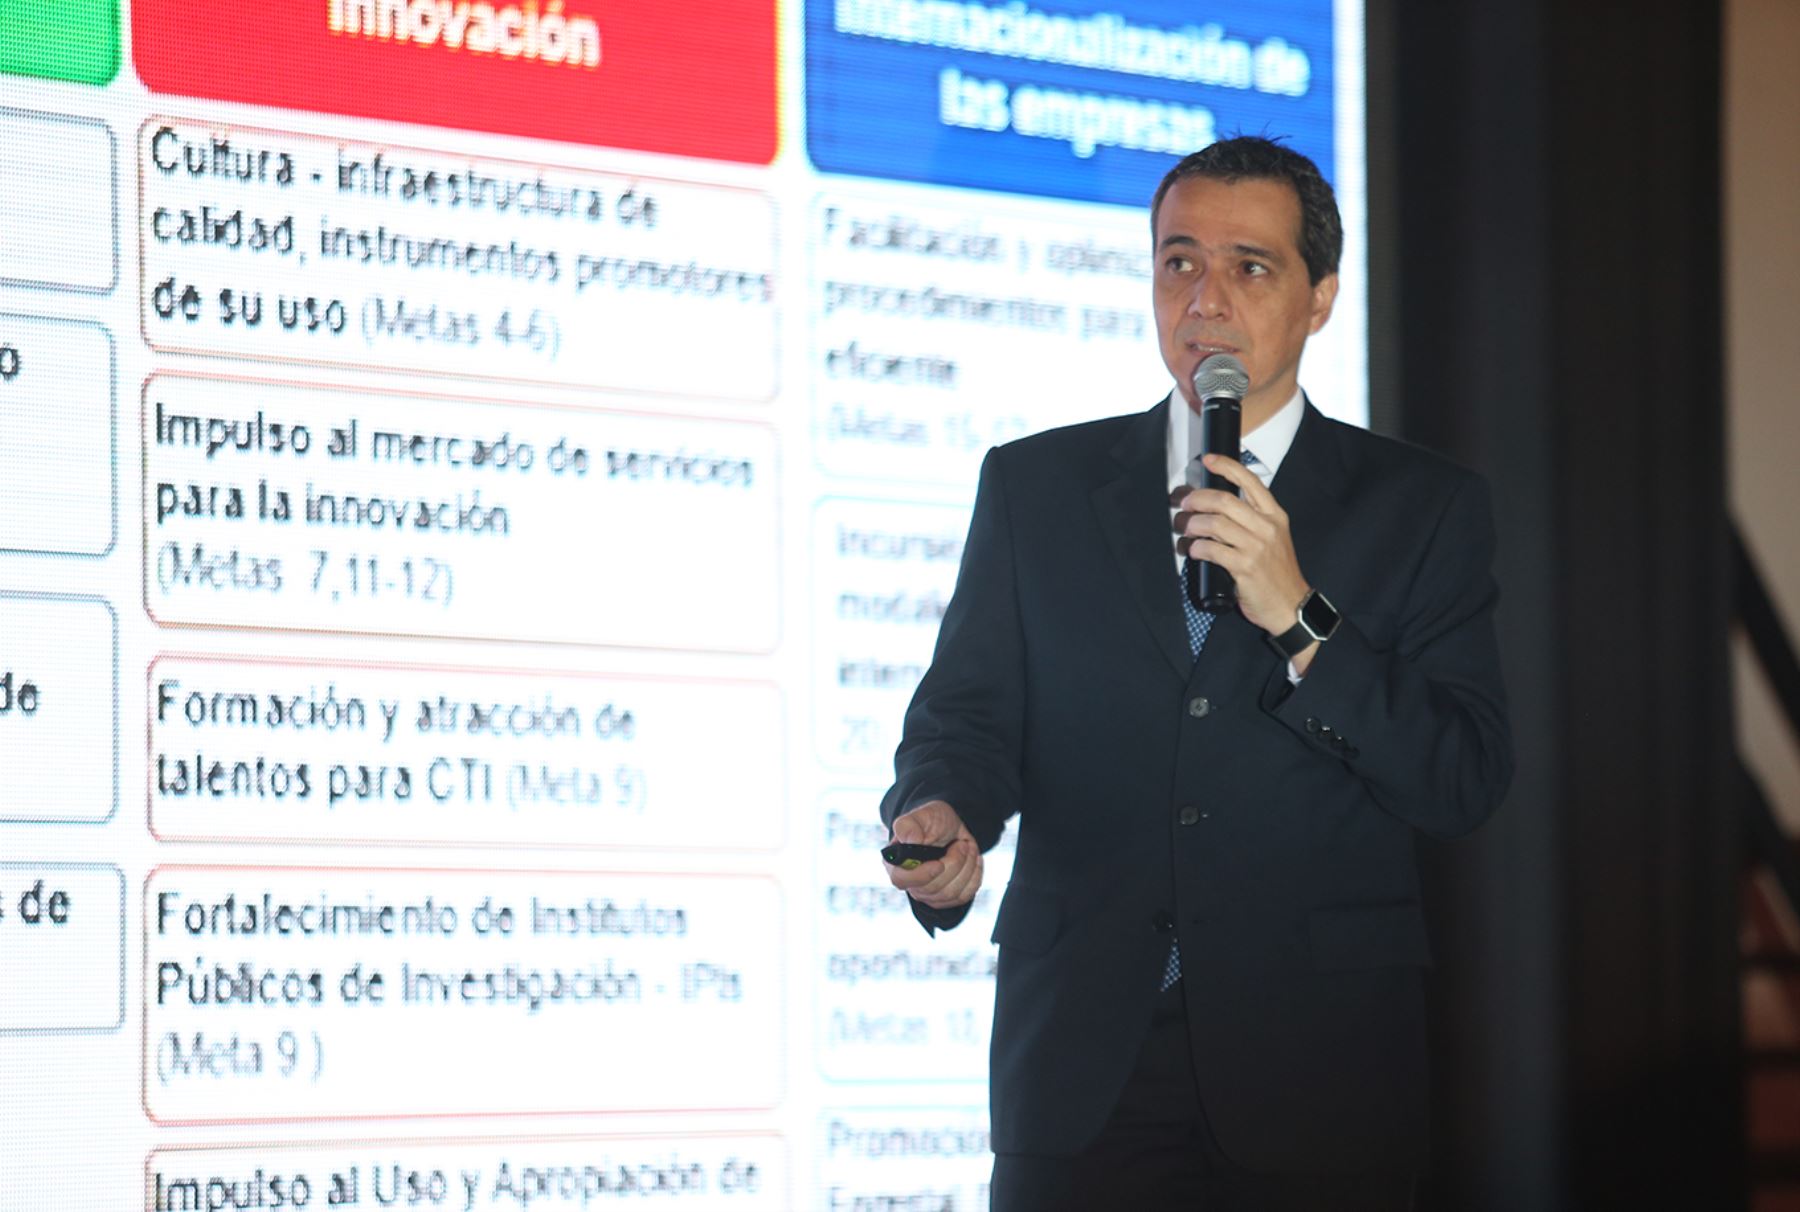 LIMA, PERÚ - JUNIO 23. Ministro de Economía Alonso Segura participa en el evento "Avances de la agenda de competitividad 2014-2018".

Foto: ANDINA/Melina Mejía.